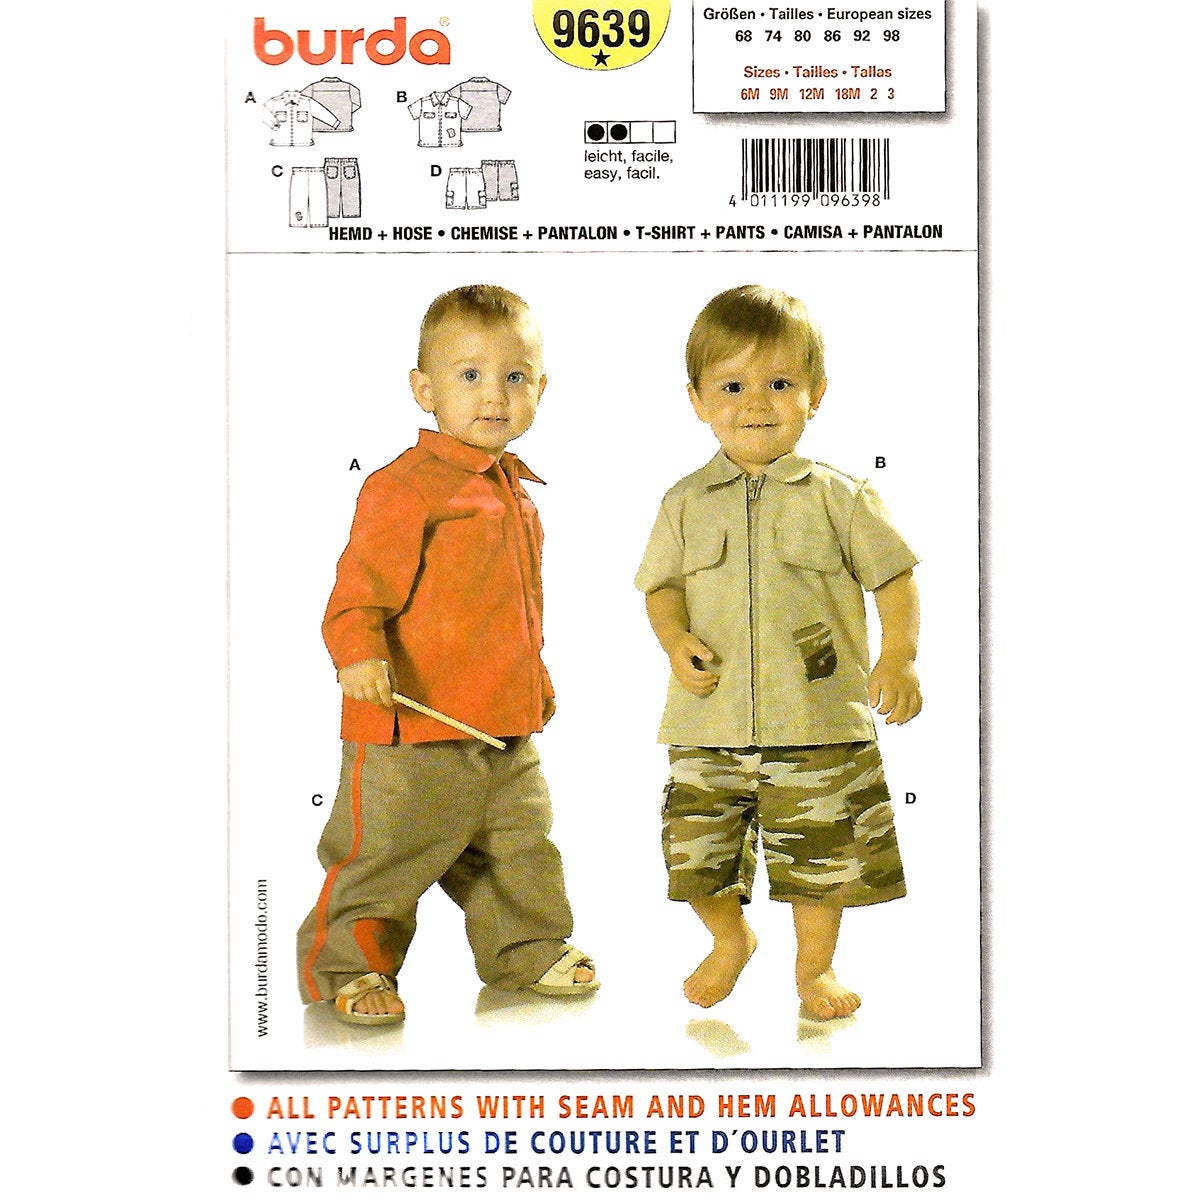 Burda 9639 boys sewing pattern